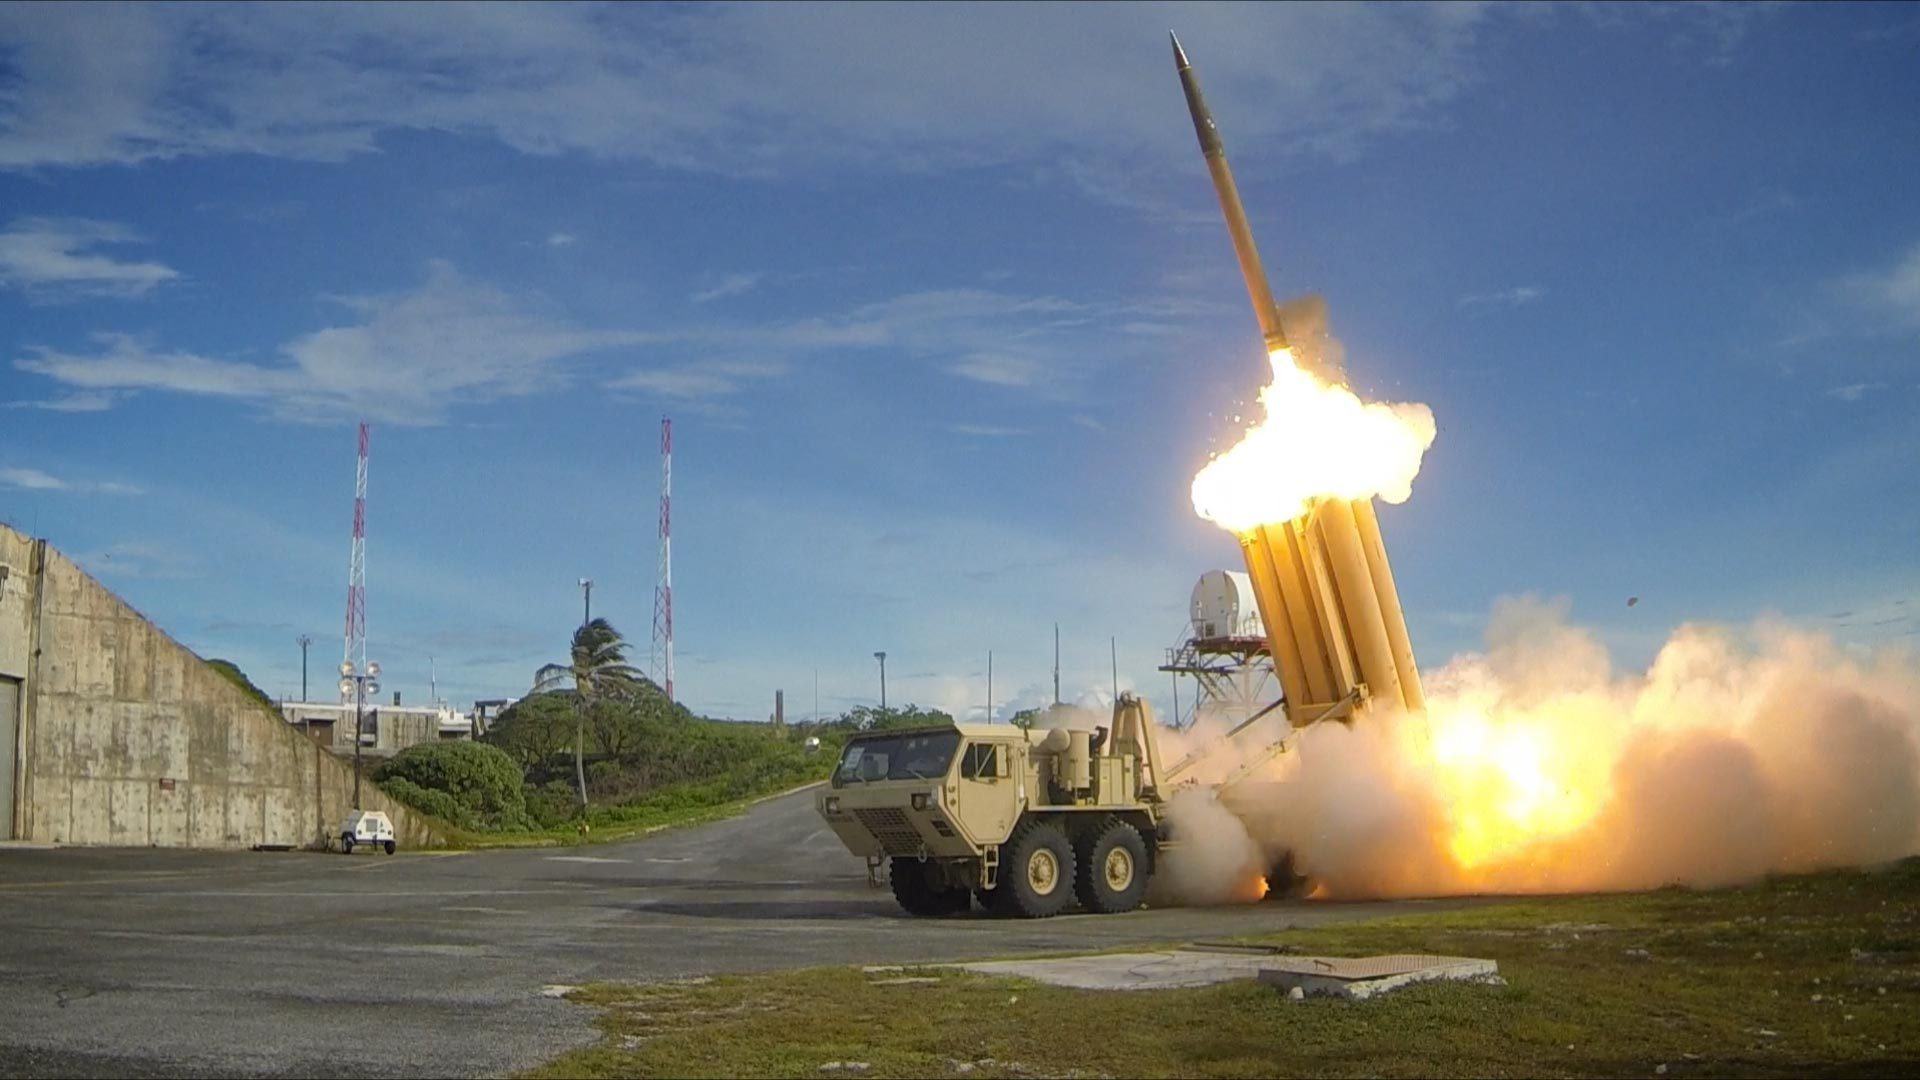 USA ska placera ut THAAD i Sydkorea - författningsdomstolen avslår ansökan om att förbjuda utplaceringen av missilförsvarssystemet